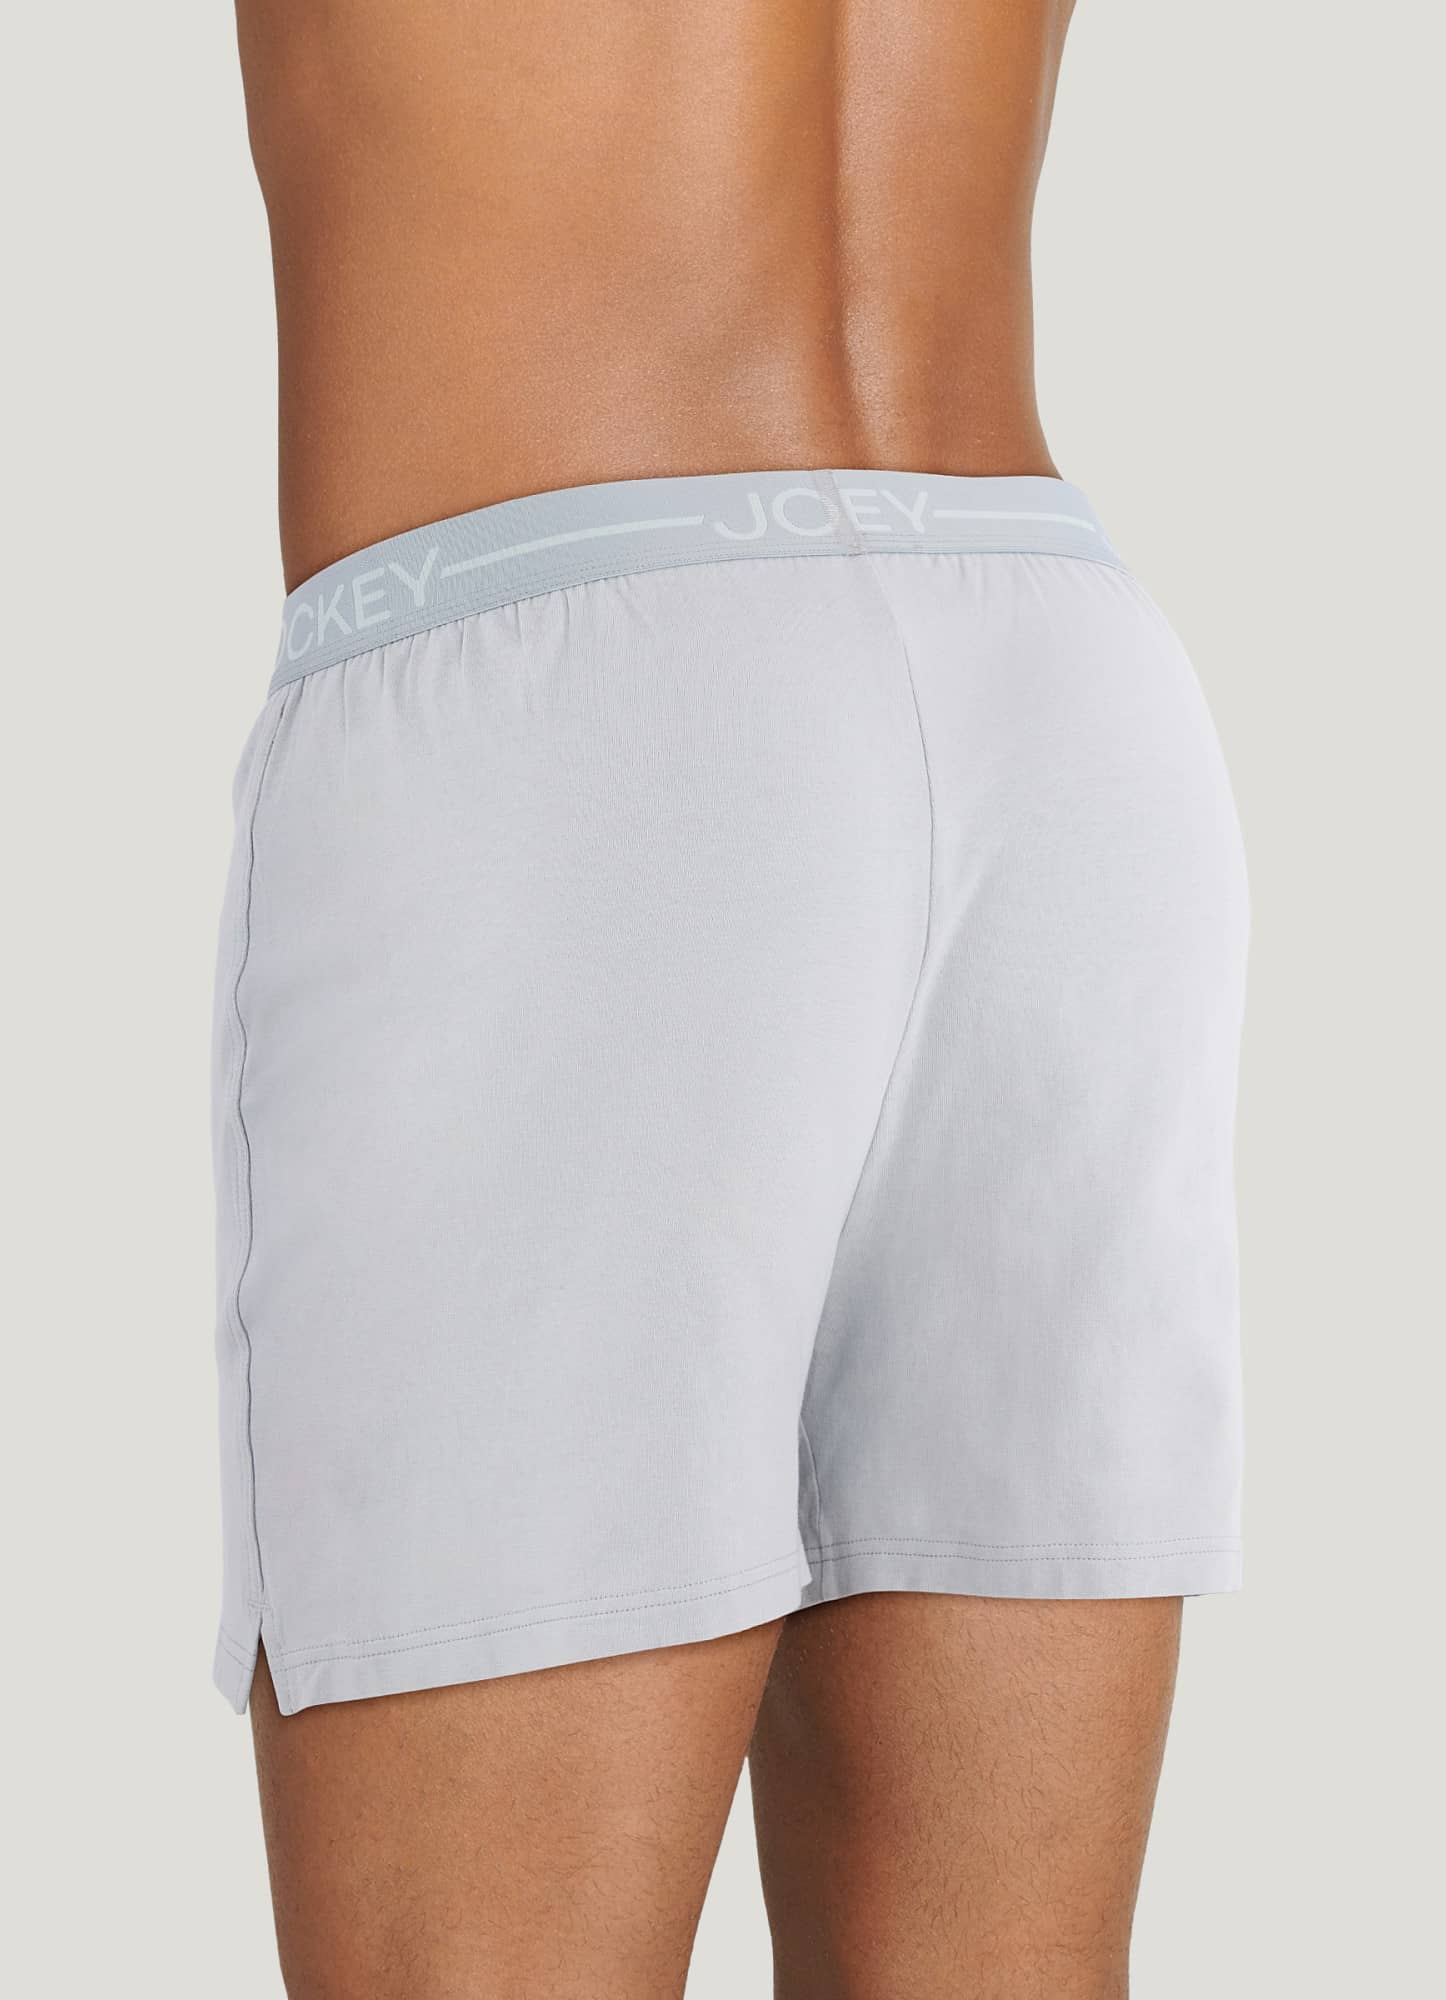 NEW Calvin Klein Men's Essential Monogram Cotton Trunks Underwear Boxers